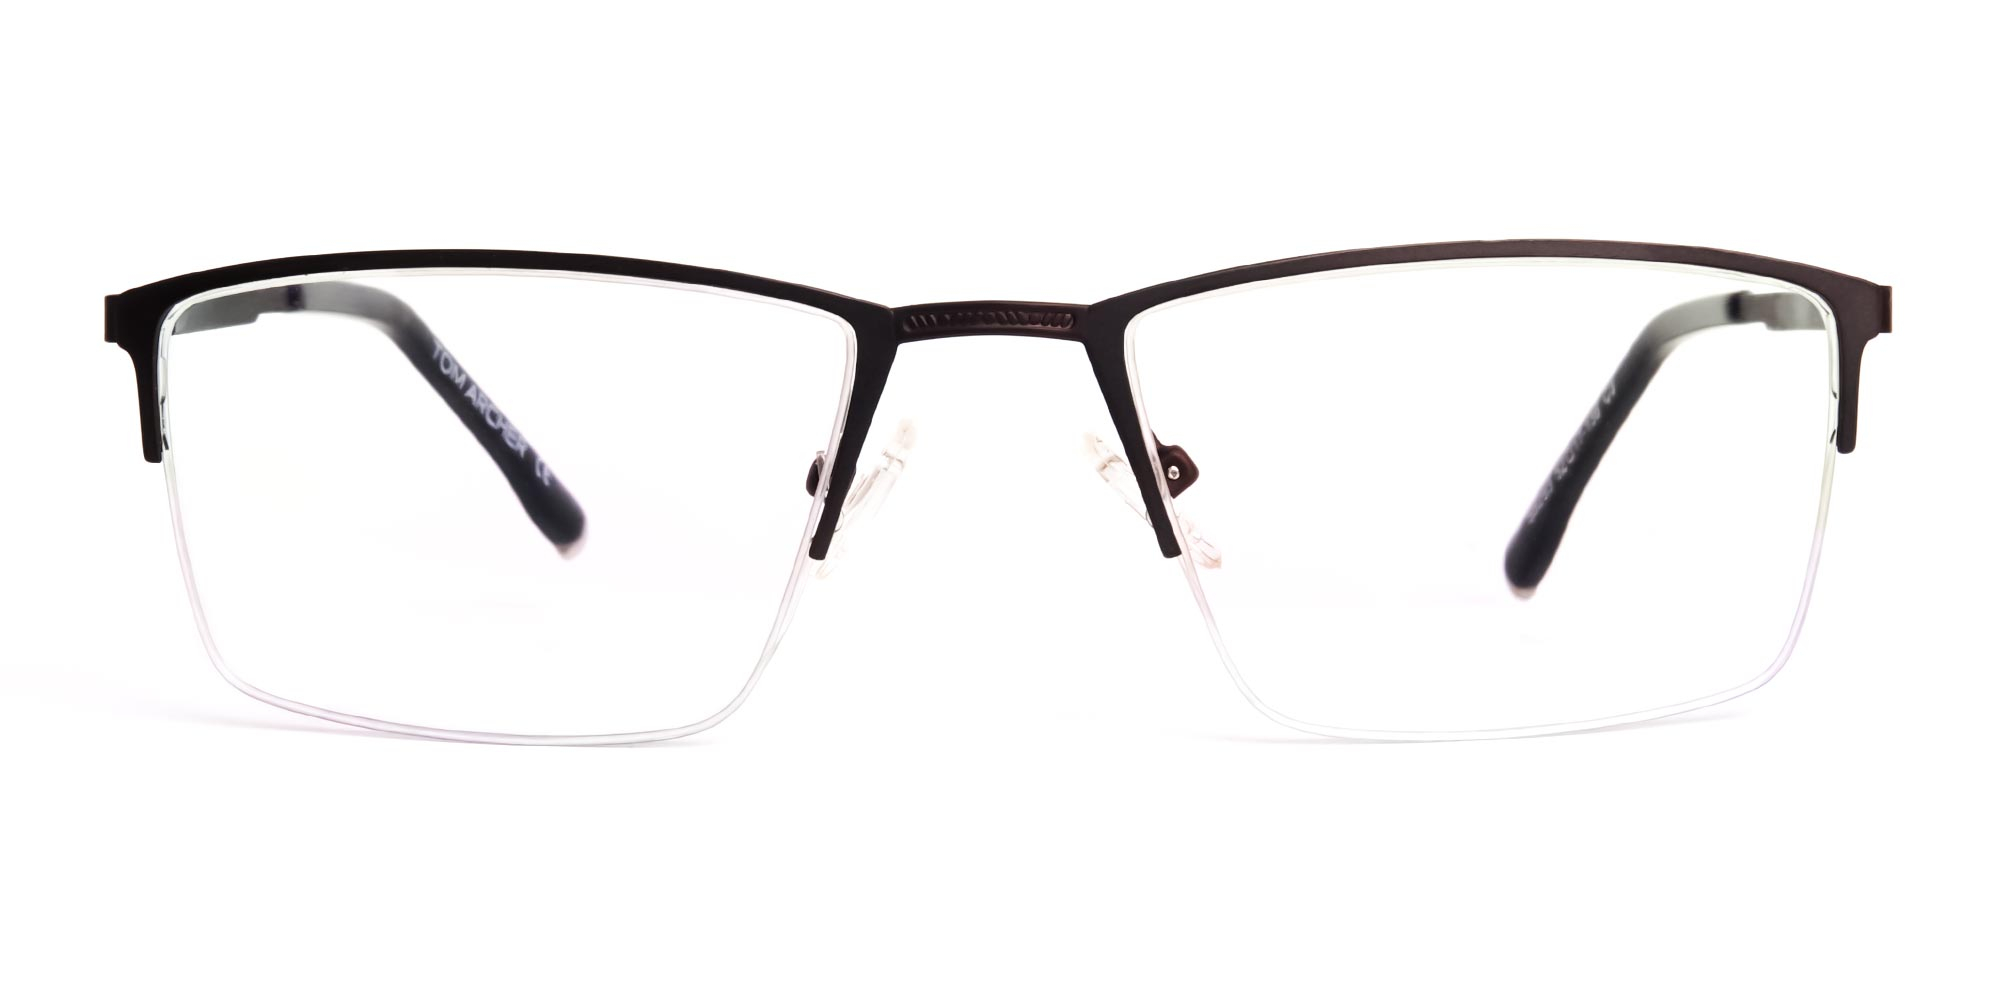 black-rectangular-half-rim-glasses-frames-1